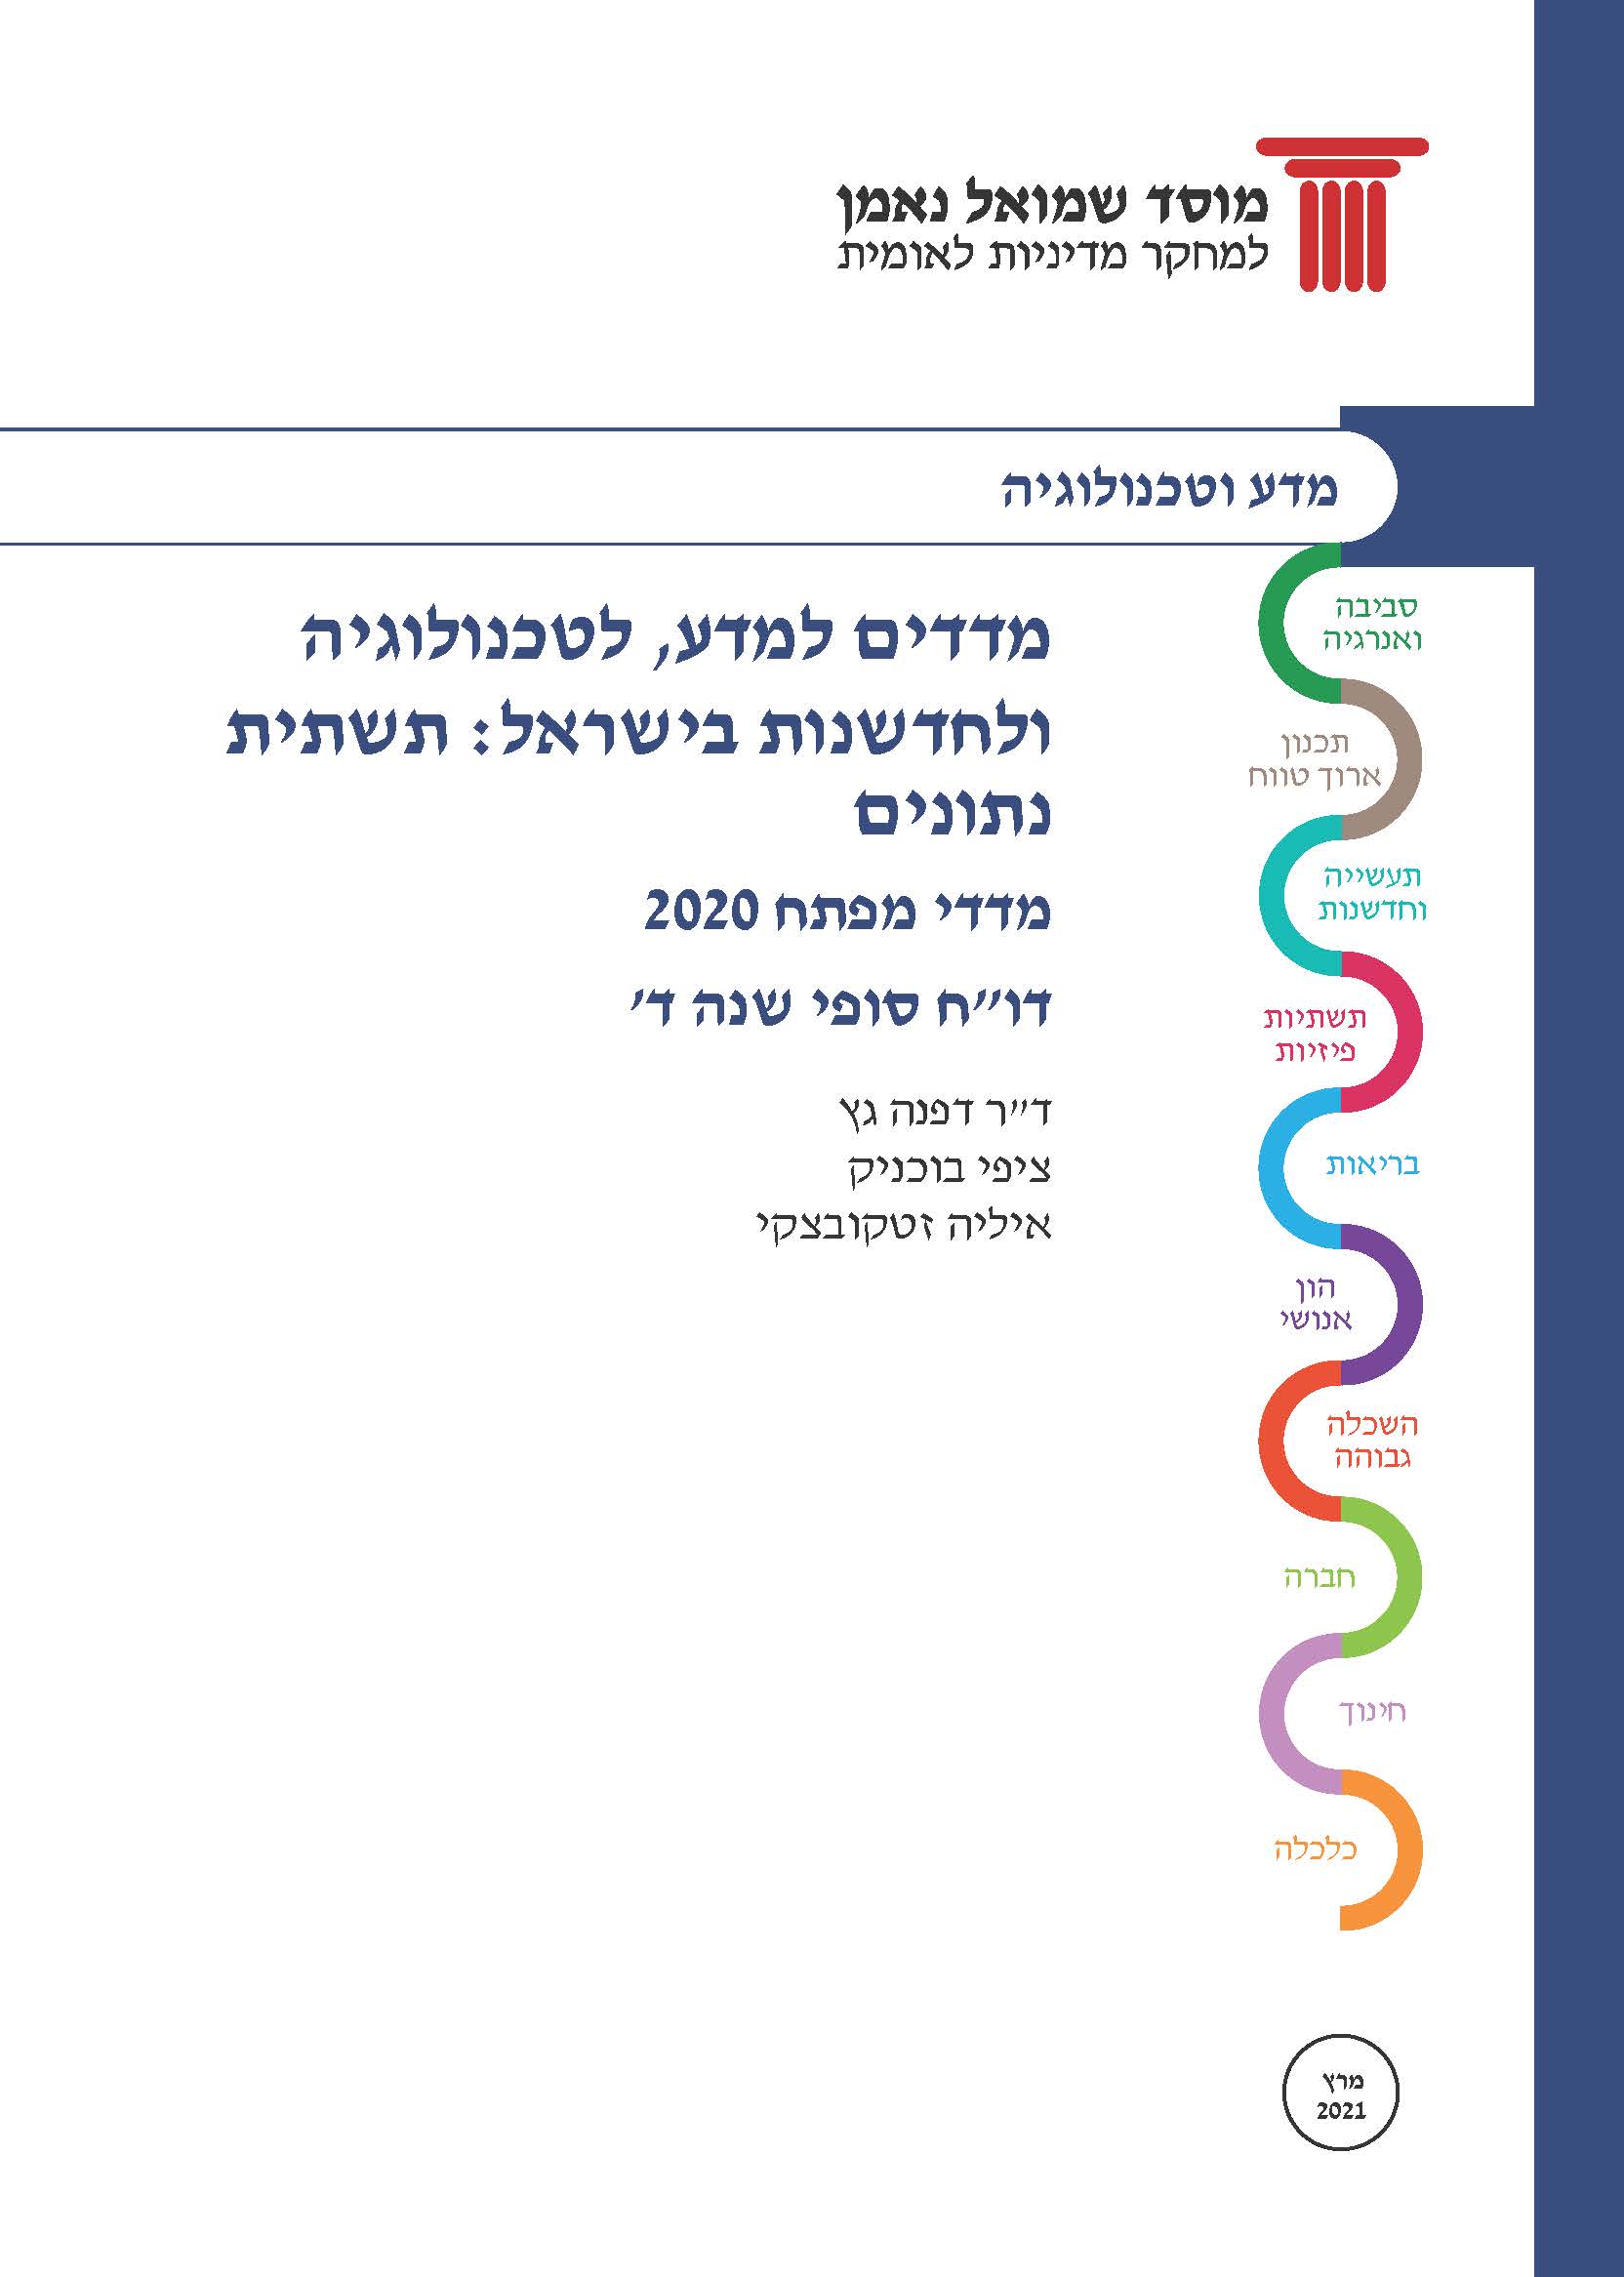 מדדים למדע, לטכנולוגיה ולחדשנות בישראל: תשתית נתונים. מדדי מפתח